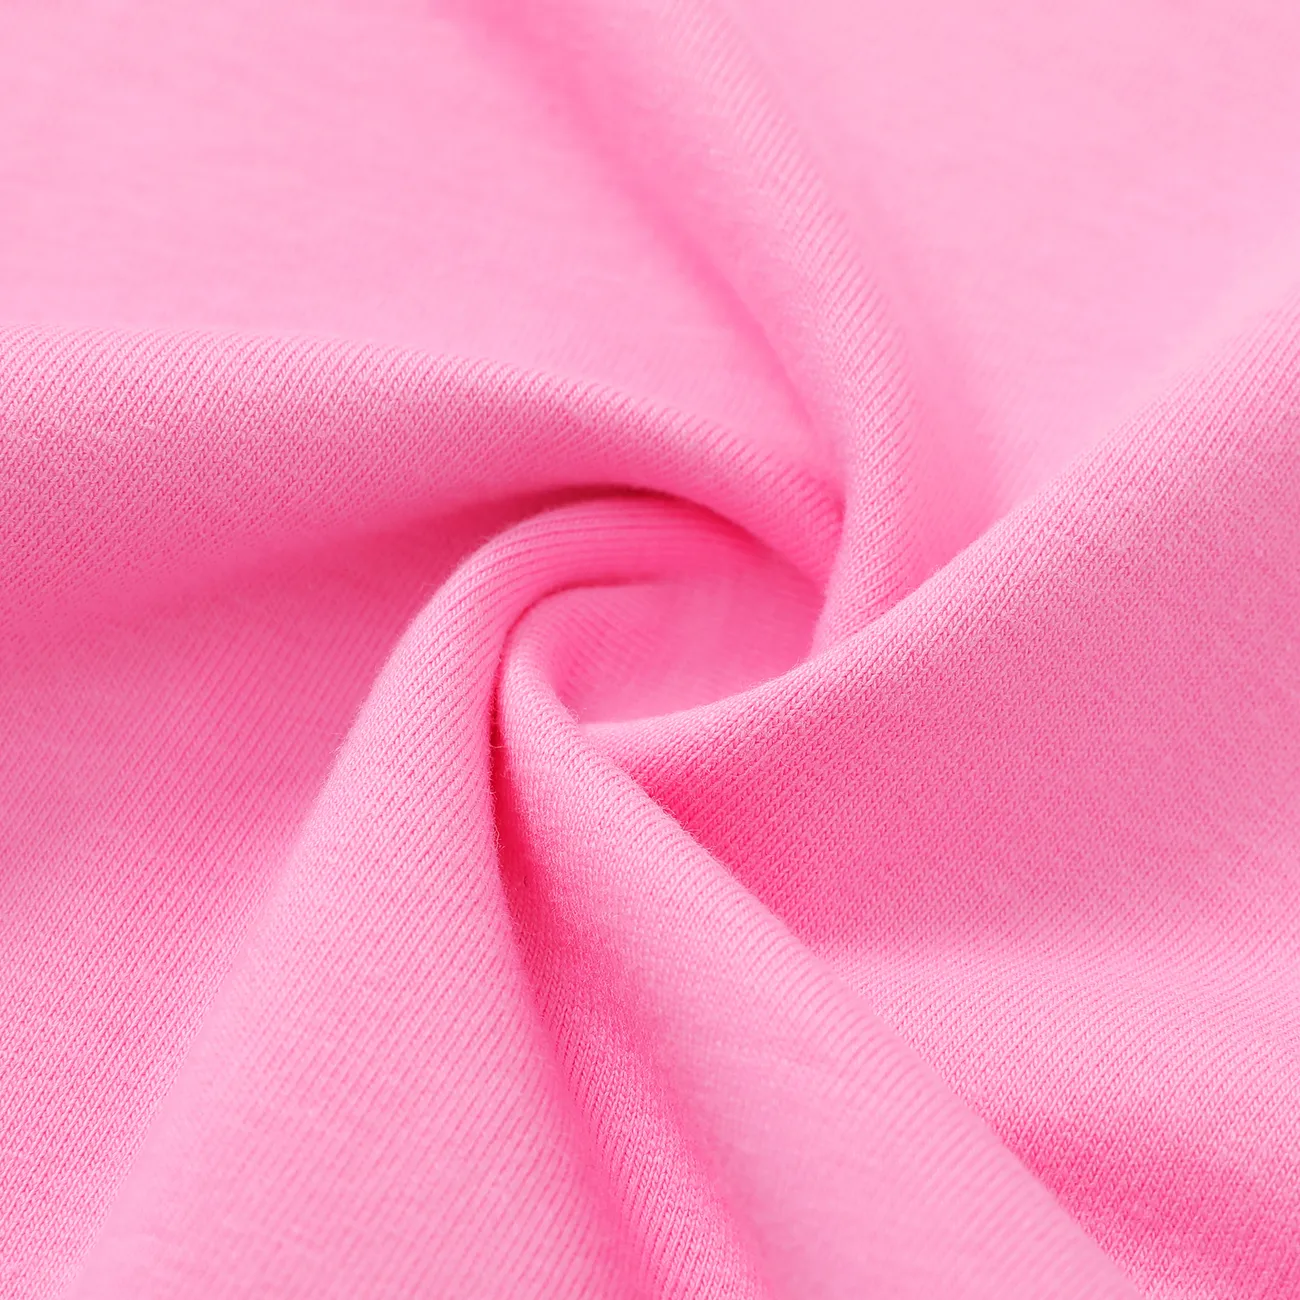 Harry Potter Baby Girl/Boy 94%cotton Hogwarts Owl Envelope pattern Romper Pink big image 1